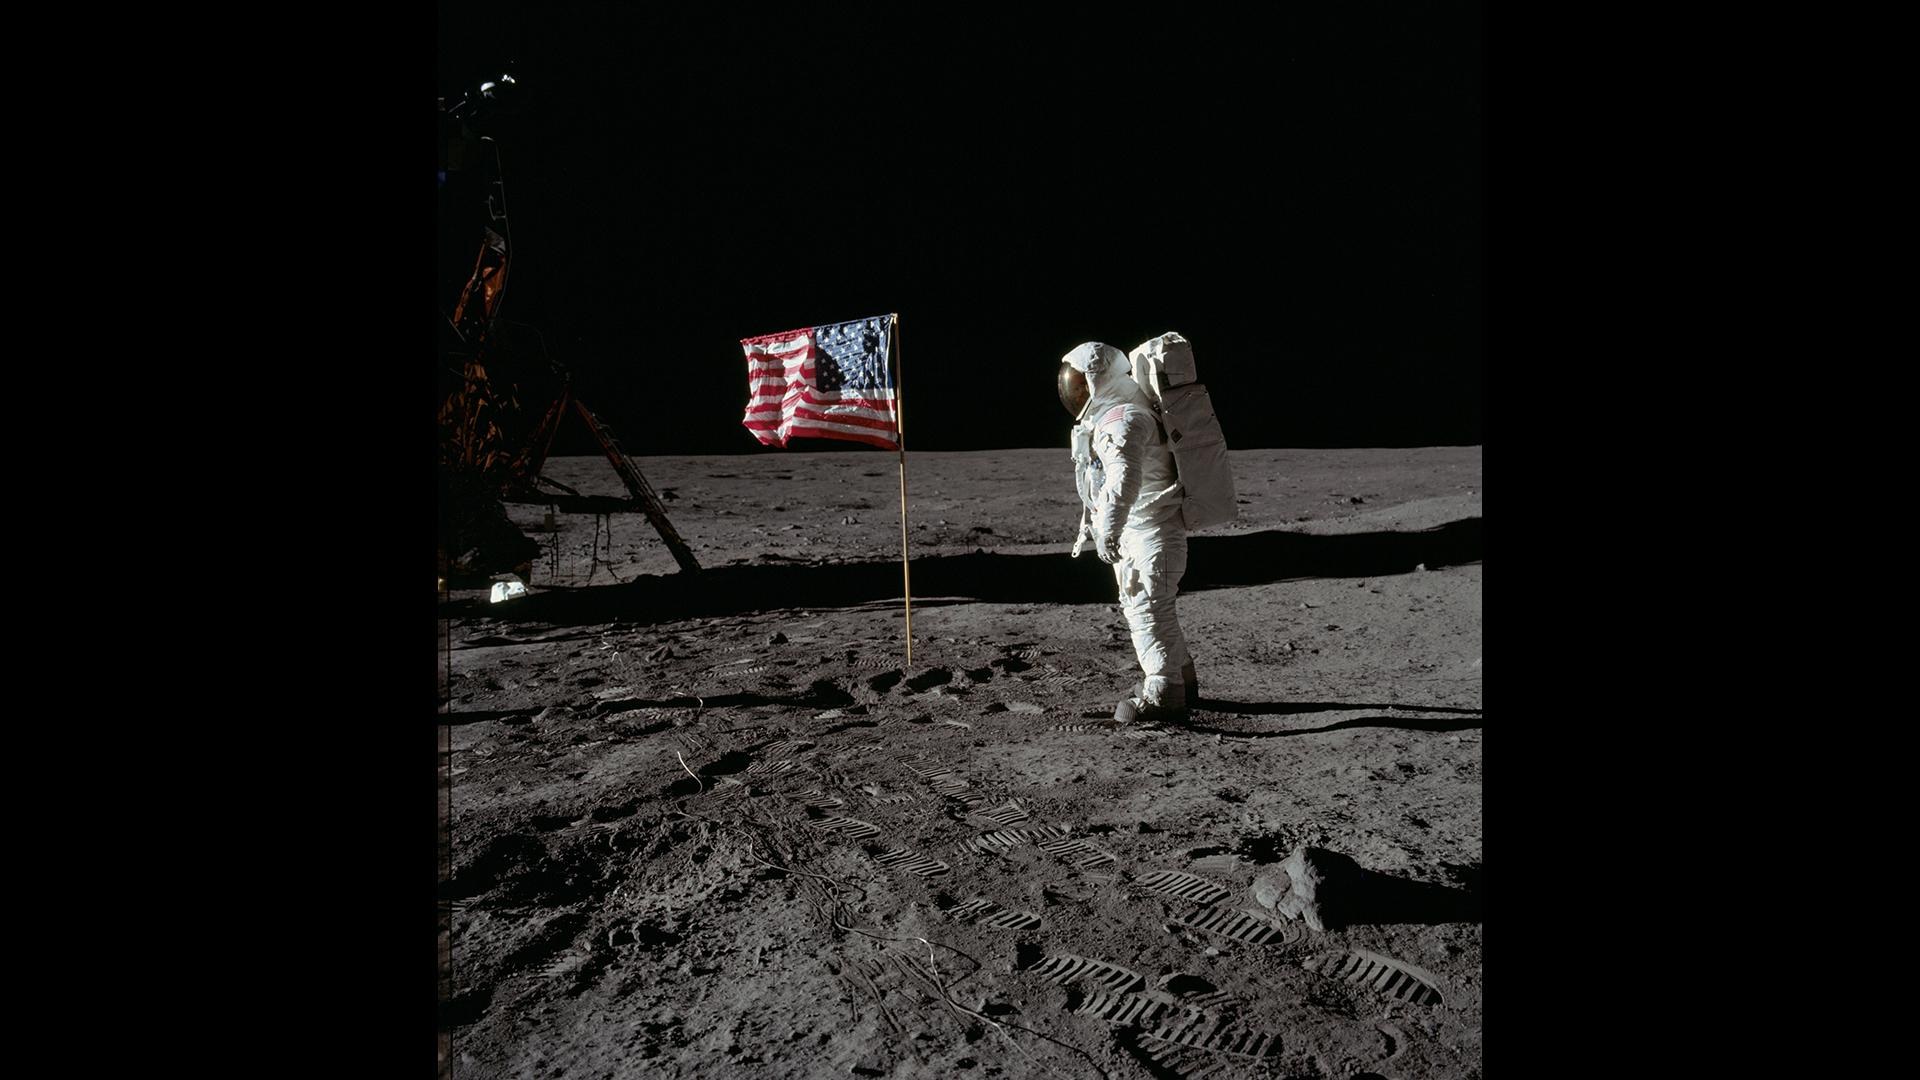 Edwin ‚Buzz‘ Aldrin salutiert vor dem Sternenbanner